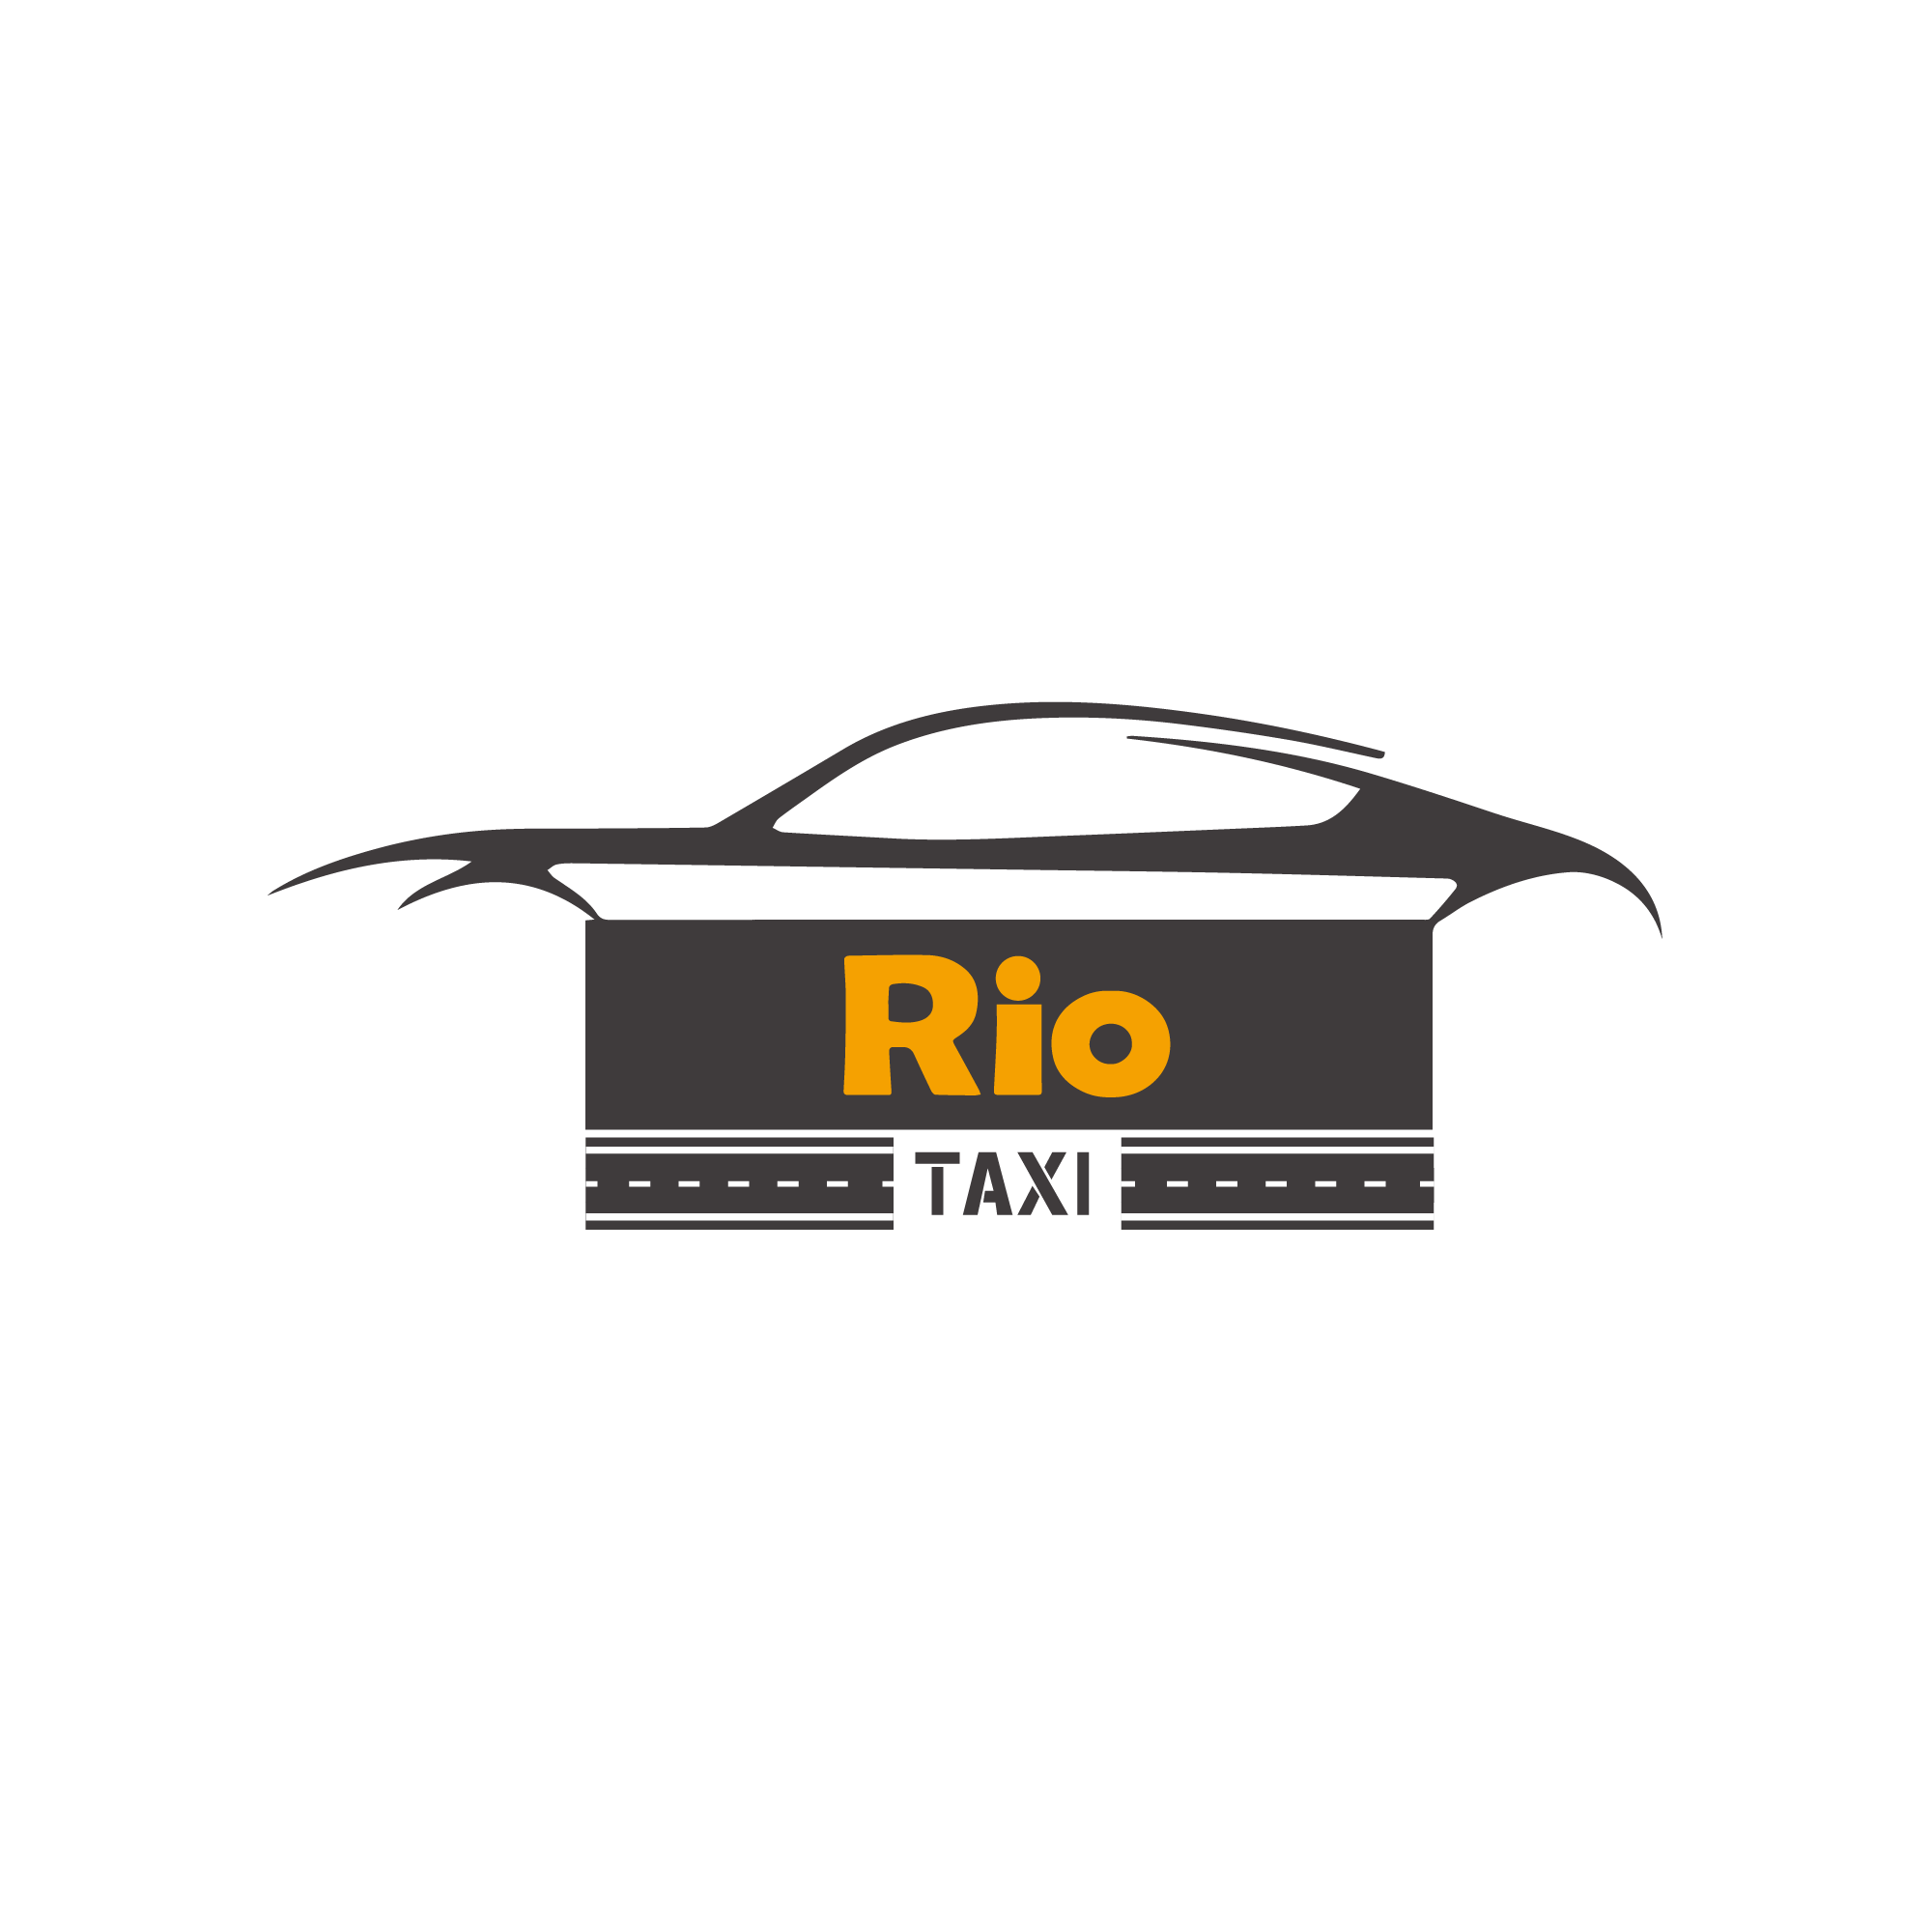 Rio taxi logo